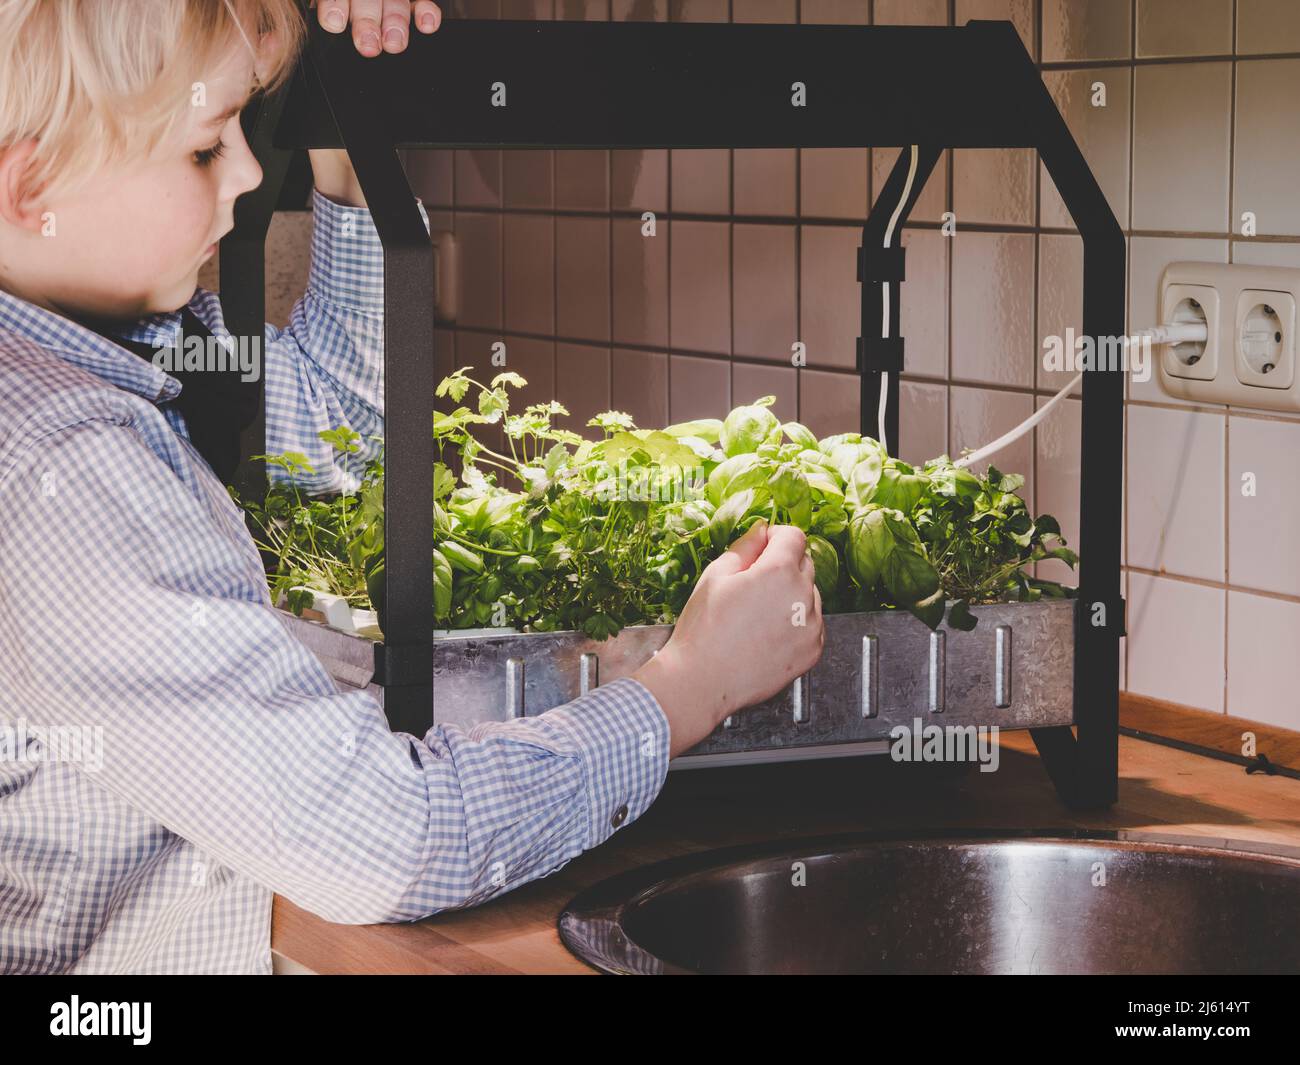 l'image montre un jeune garçon récolte des légumes cultivés en hydroponique à partir d'un kit de culture intérieur Banque D'Images